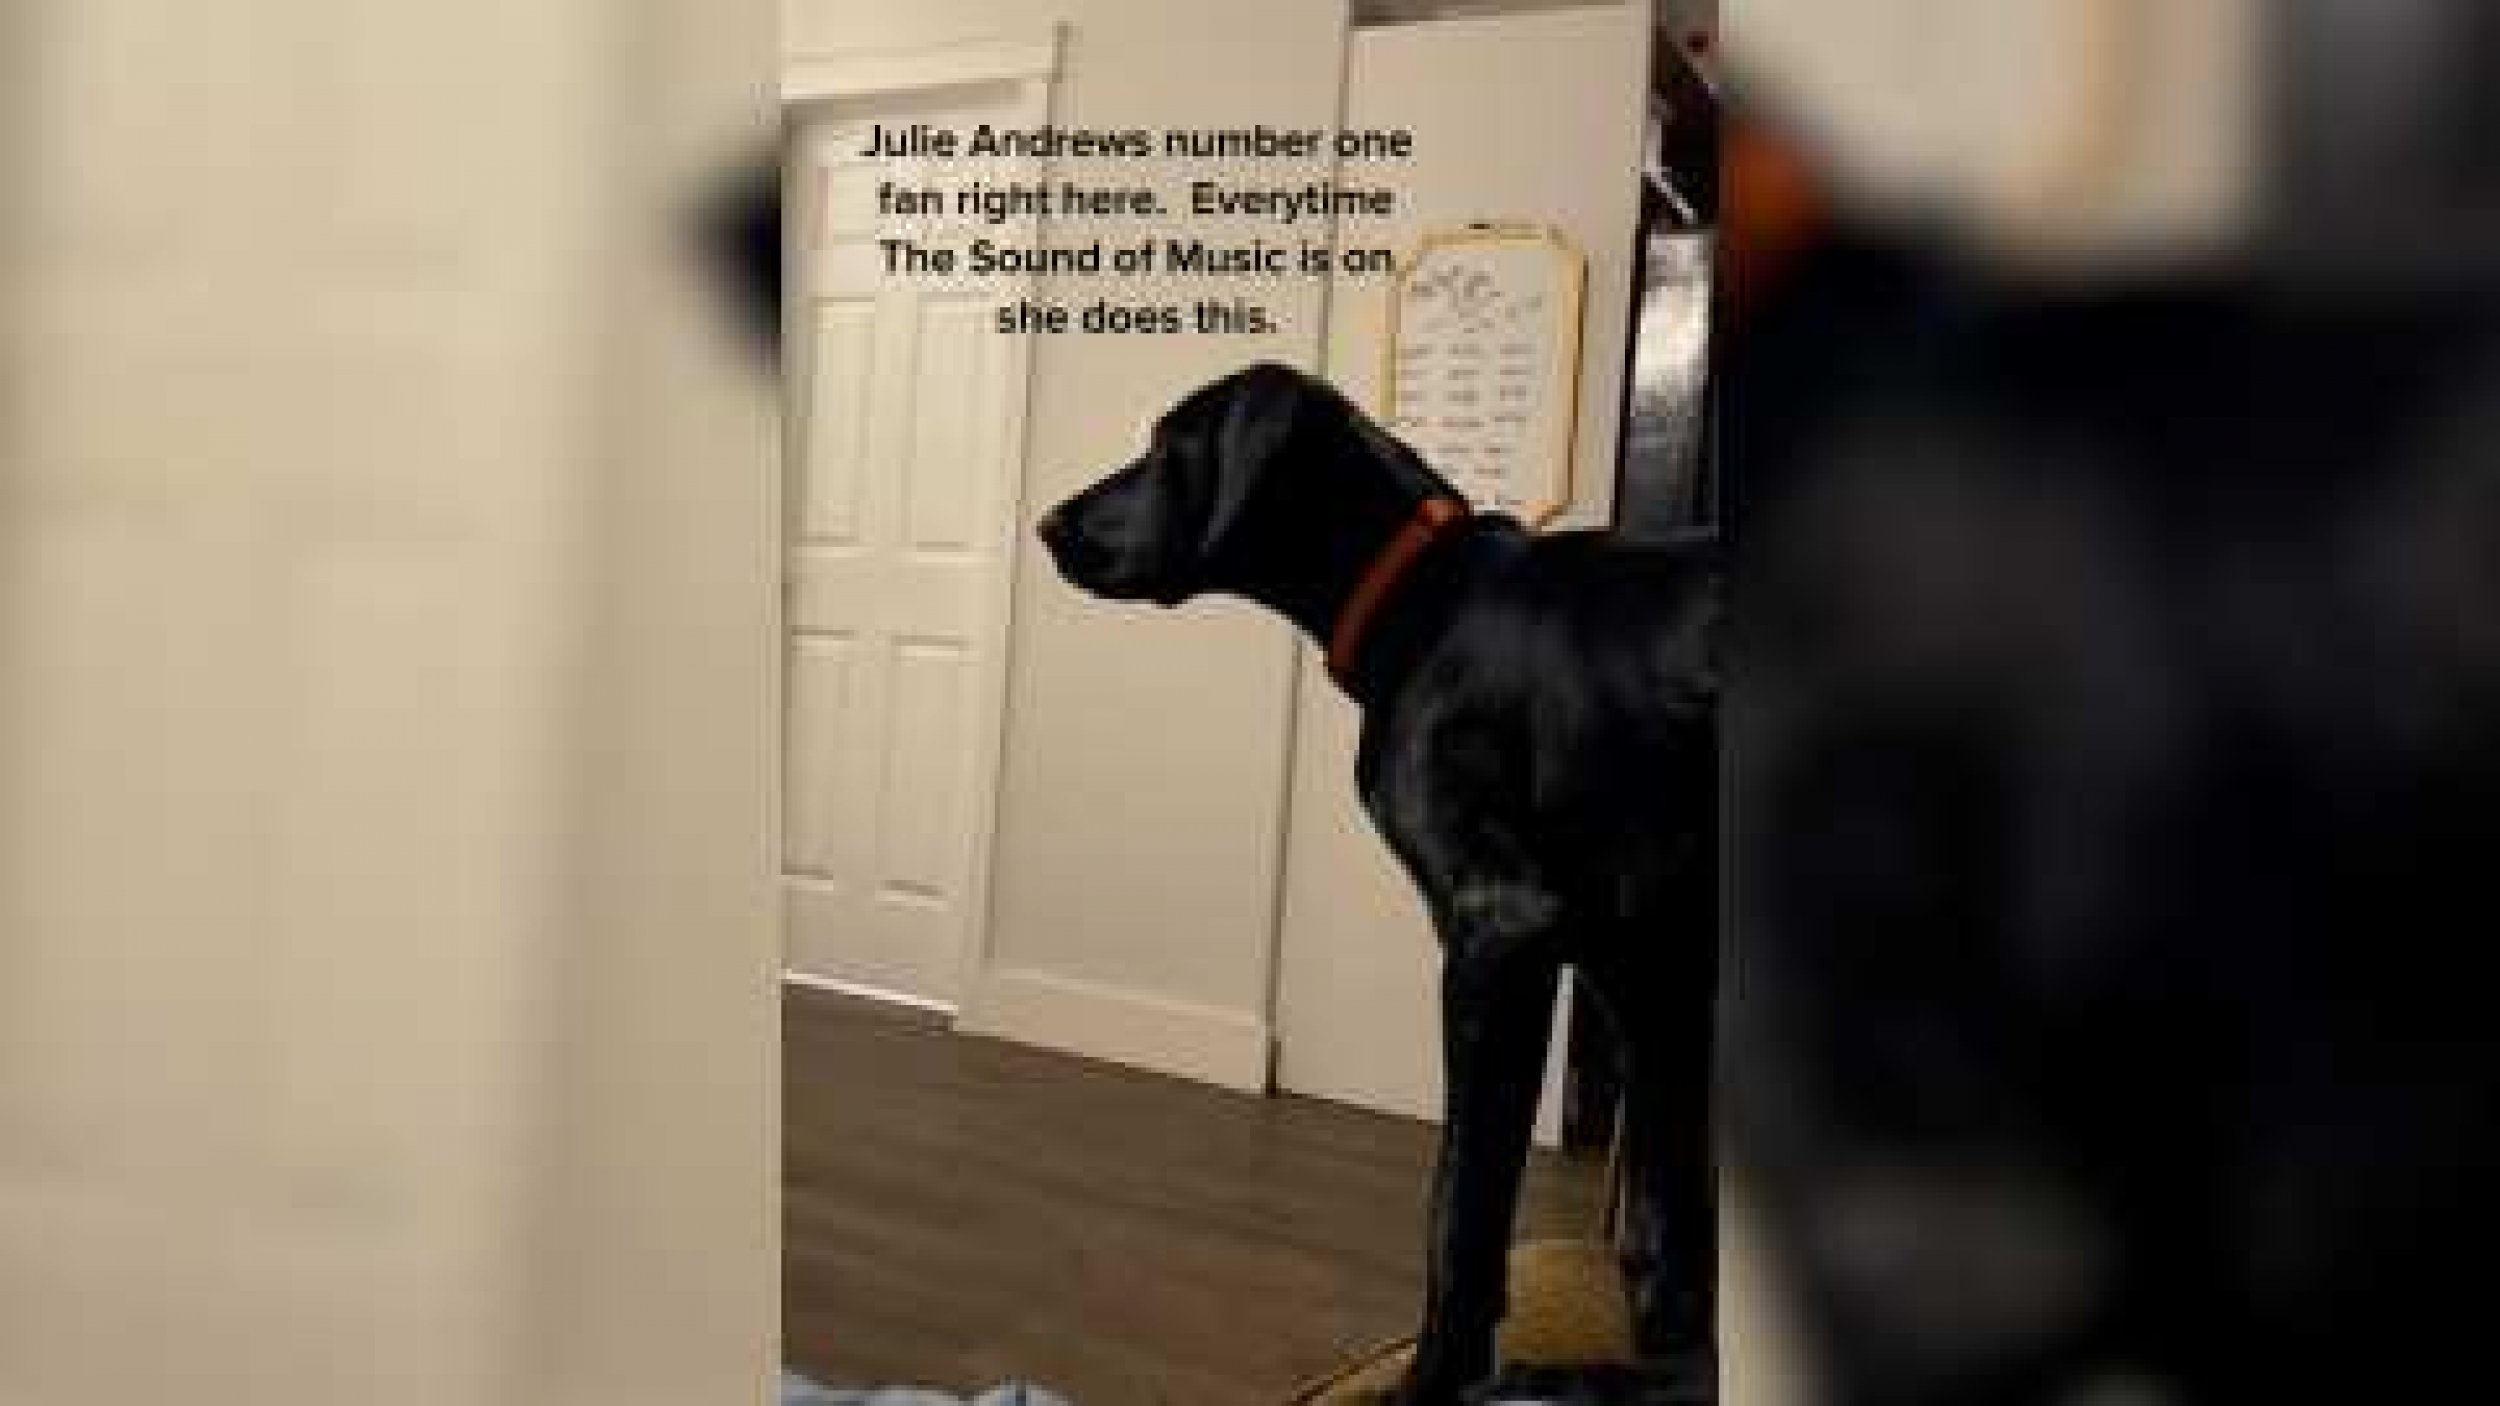 Dog Is Number One Fan Of Julie Andrews In Viral Clip Good Taste